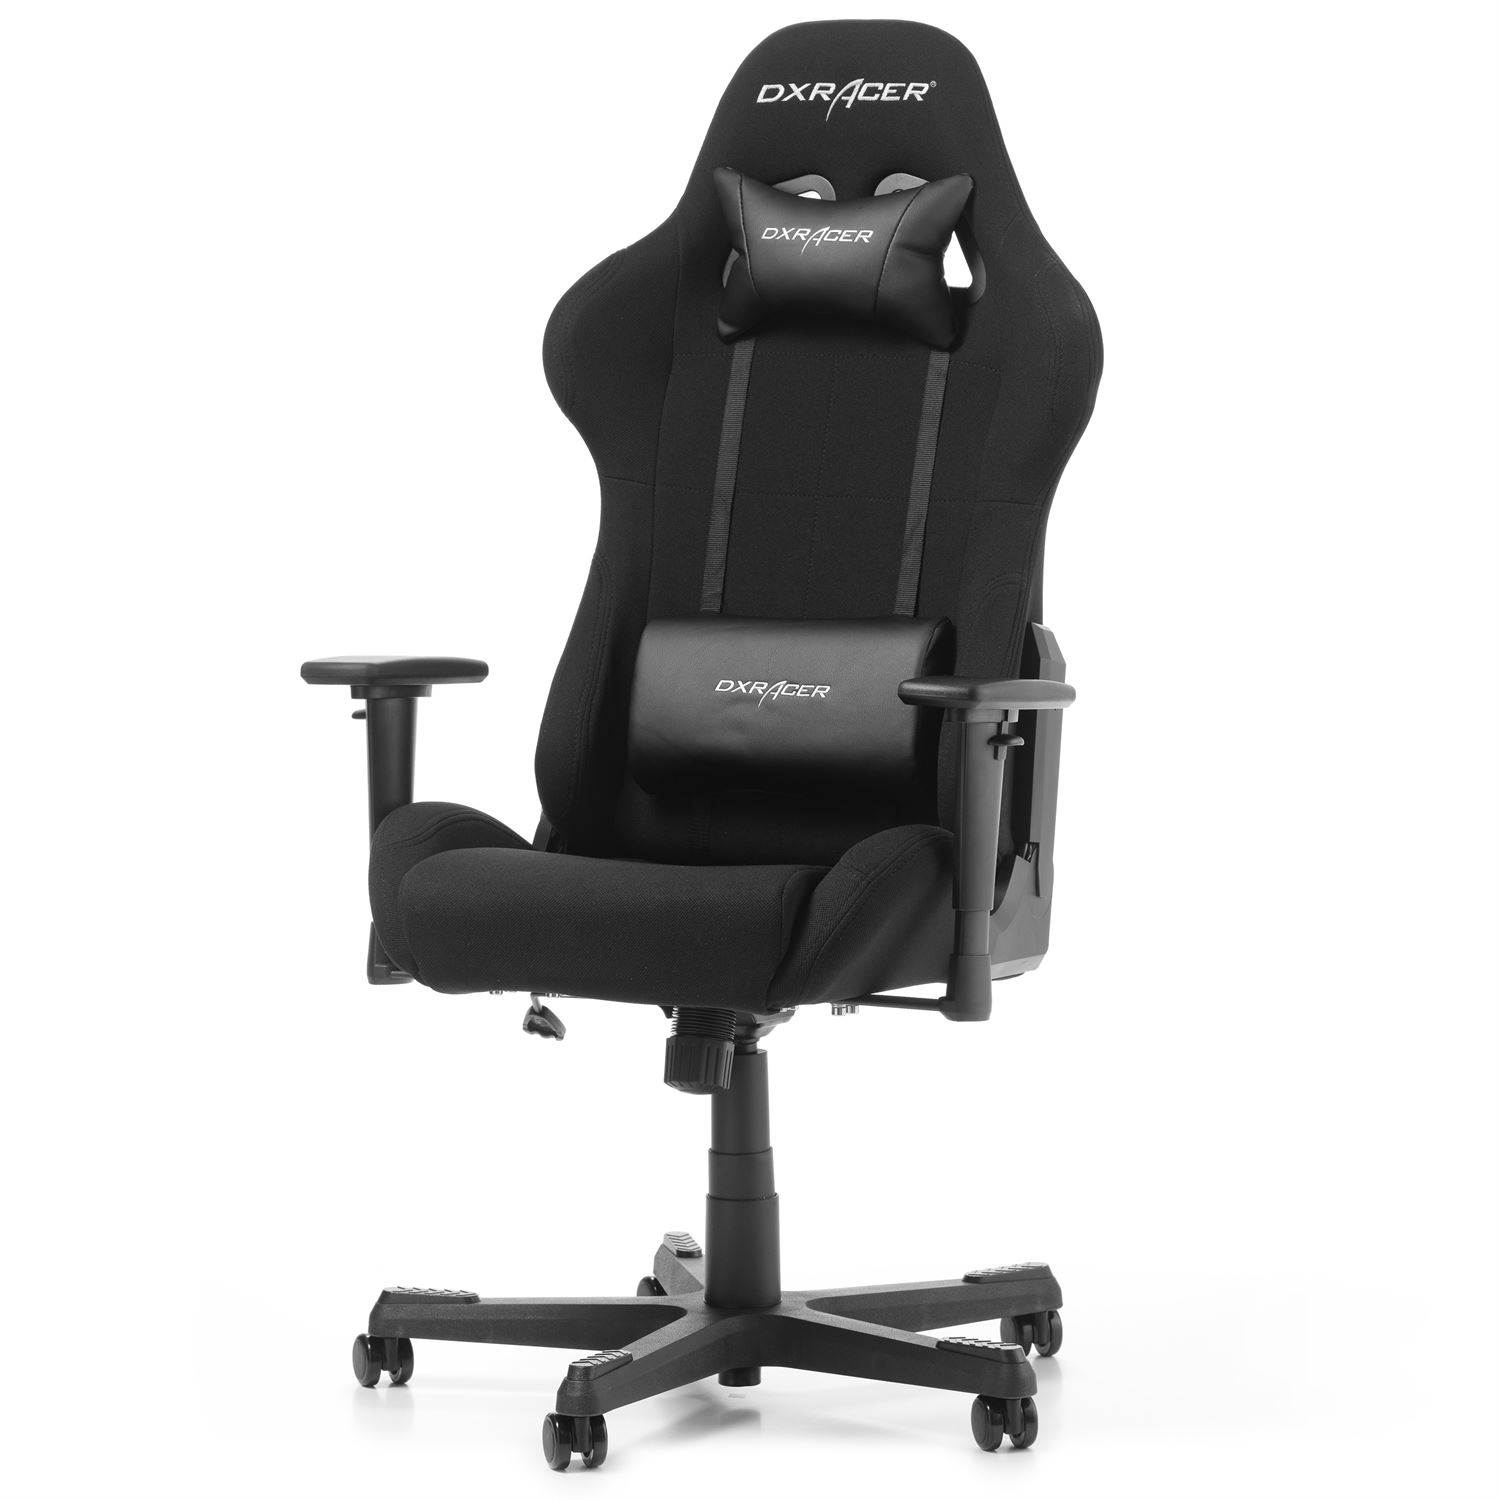  DXRacer  FORMULA Gaming Chair F01 N K b hos Geekunit dk